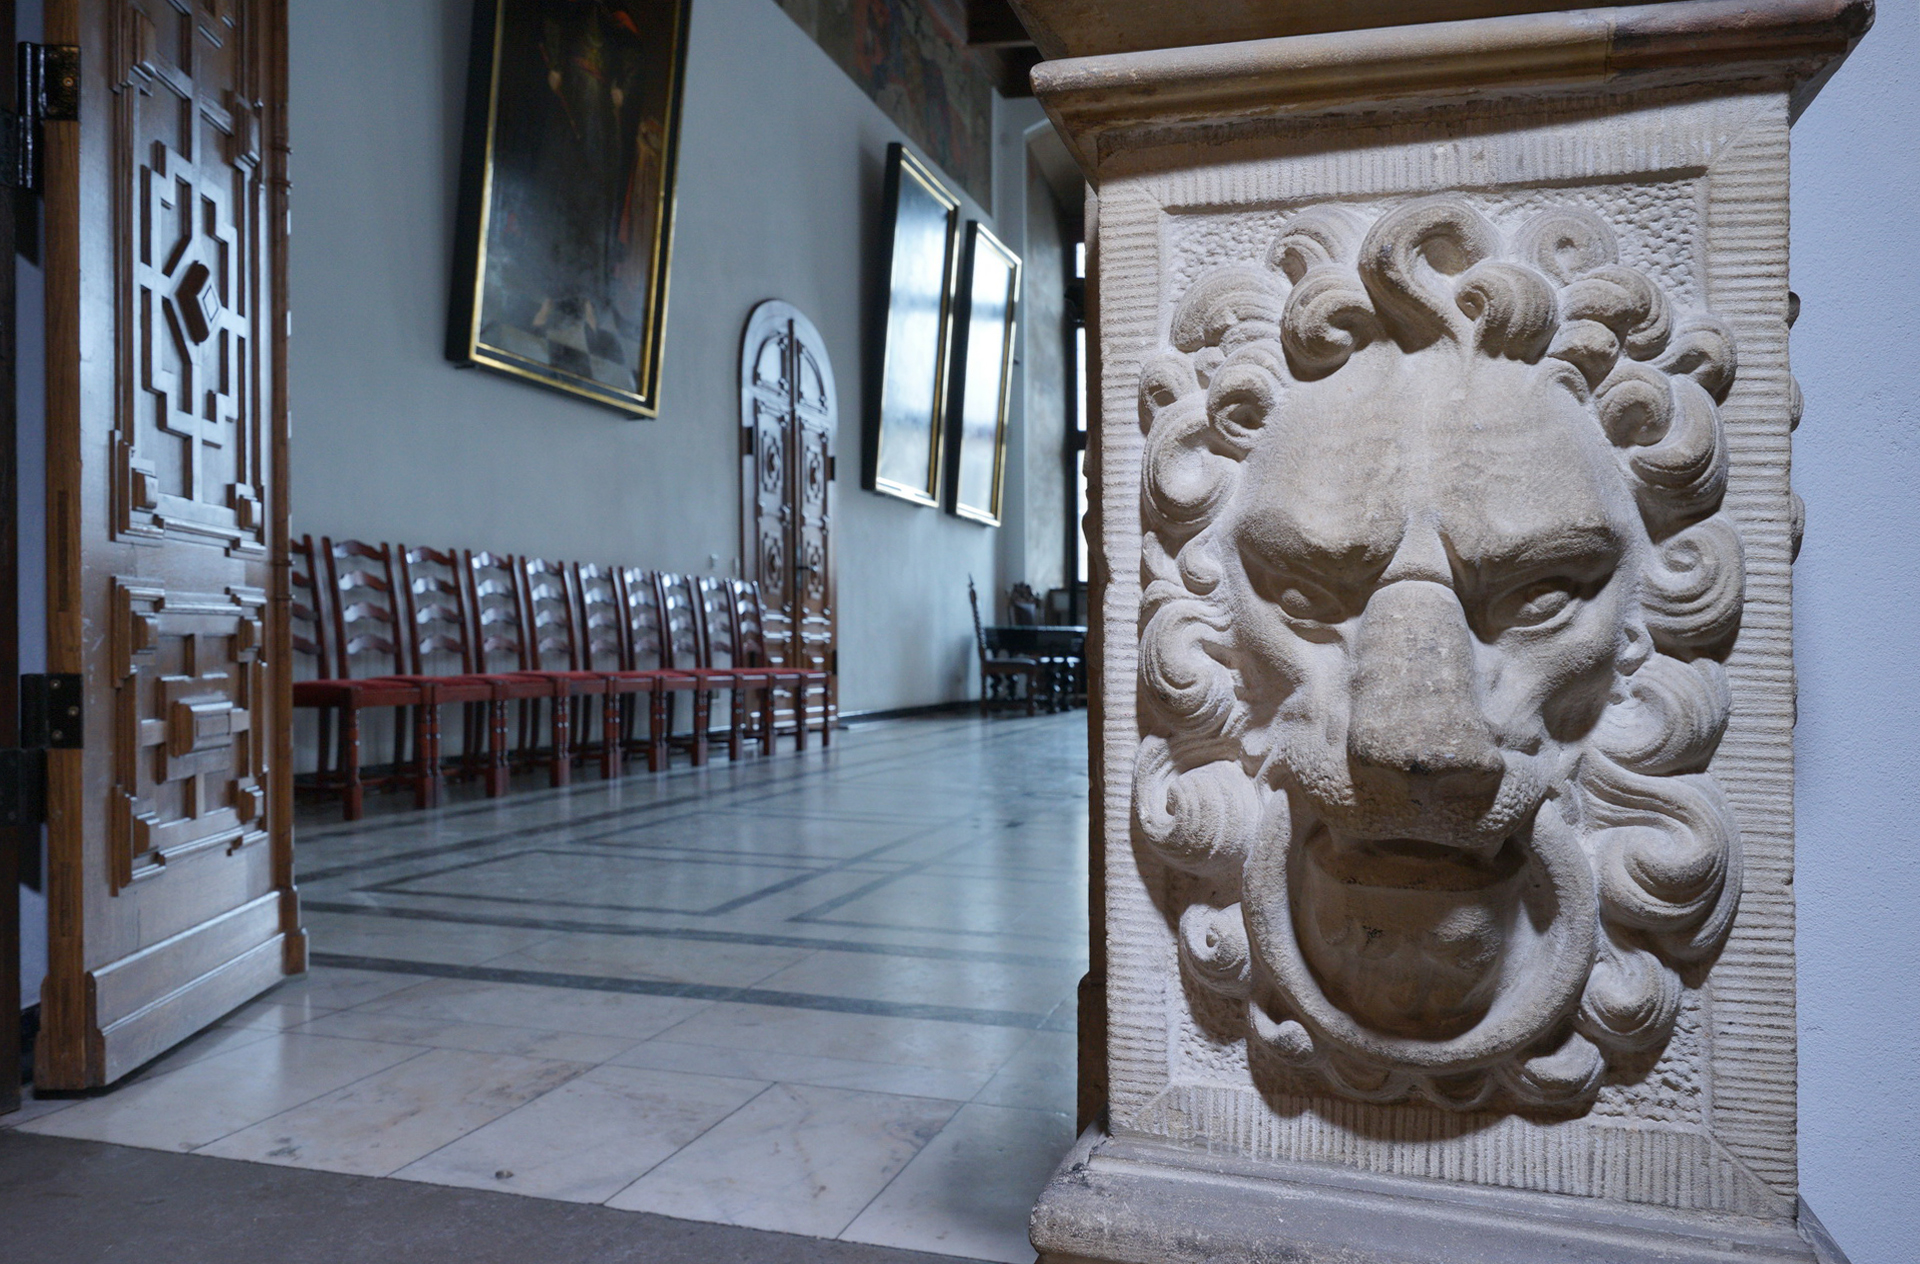 Wejście do Wielkiej Sali Wety. Po prawej kamienna płaskorzeźba w kształcie lwiej głowy. W głębi pomieszczenia krzesła ustawione pod ścianą.